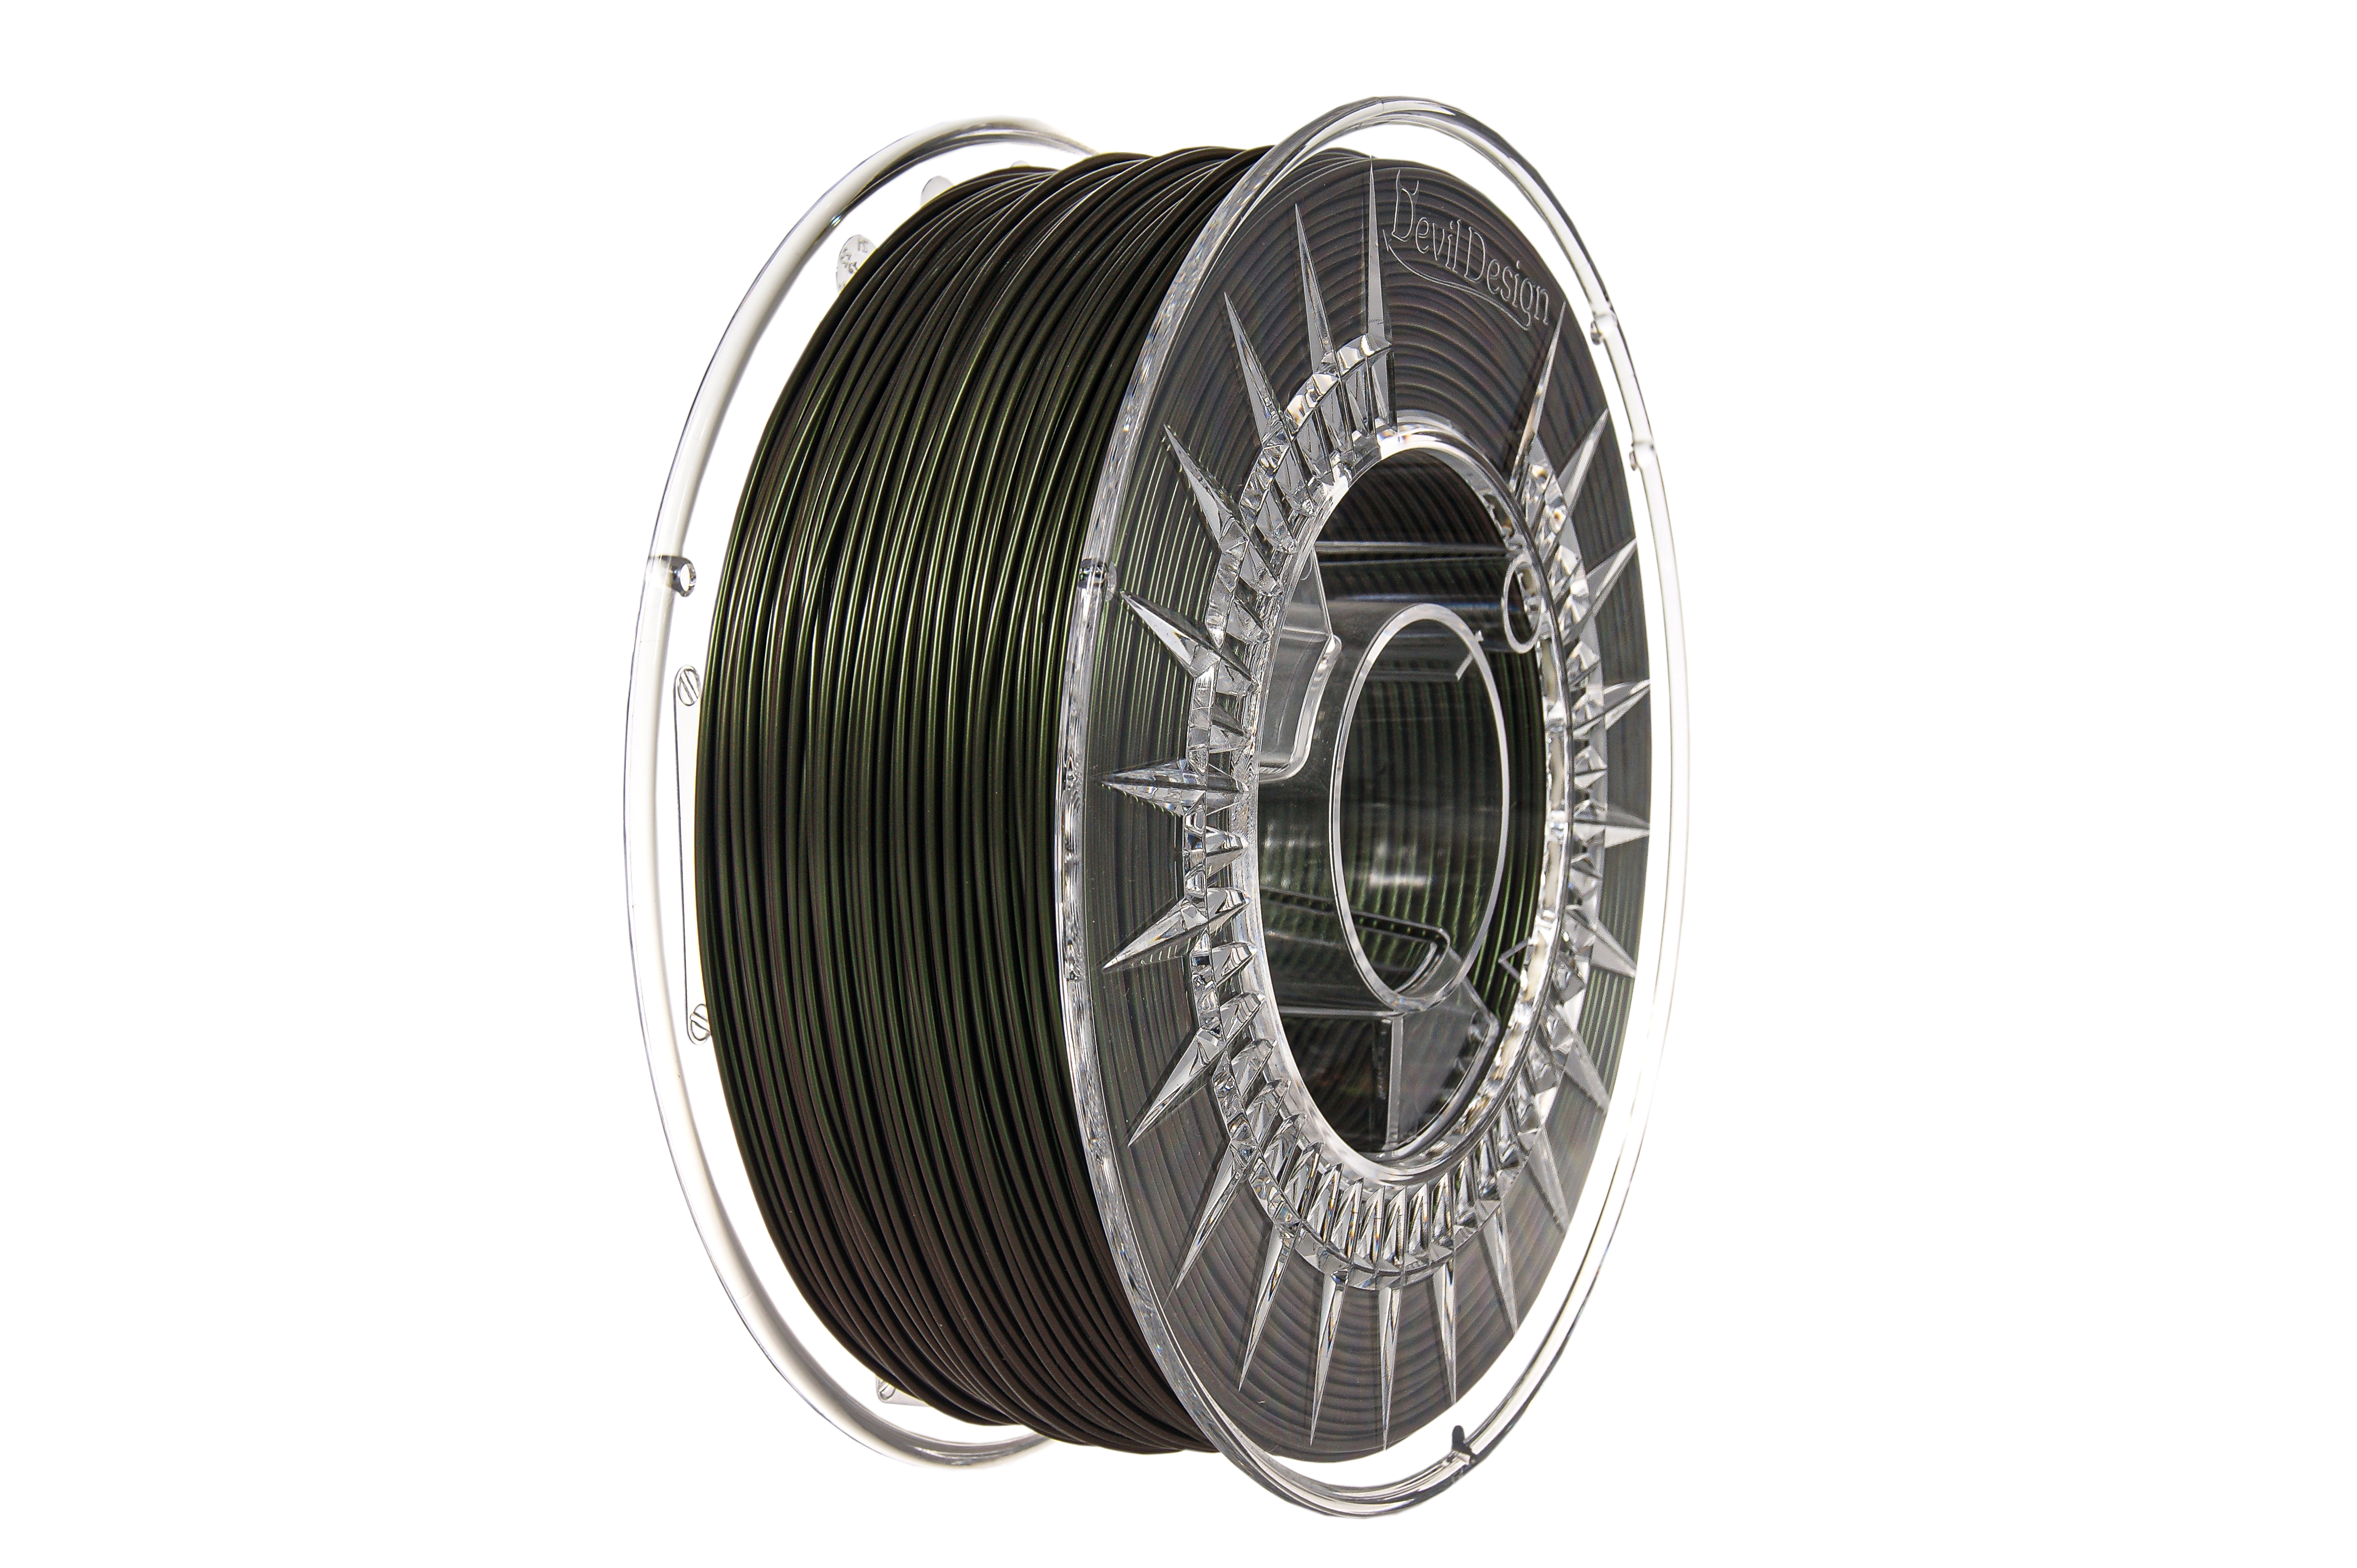 PLA-Green Metallic Filament